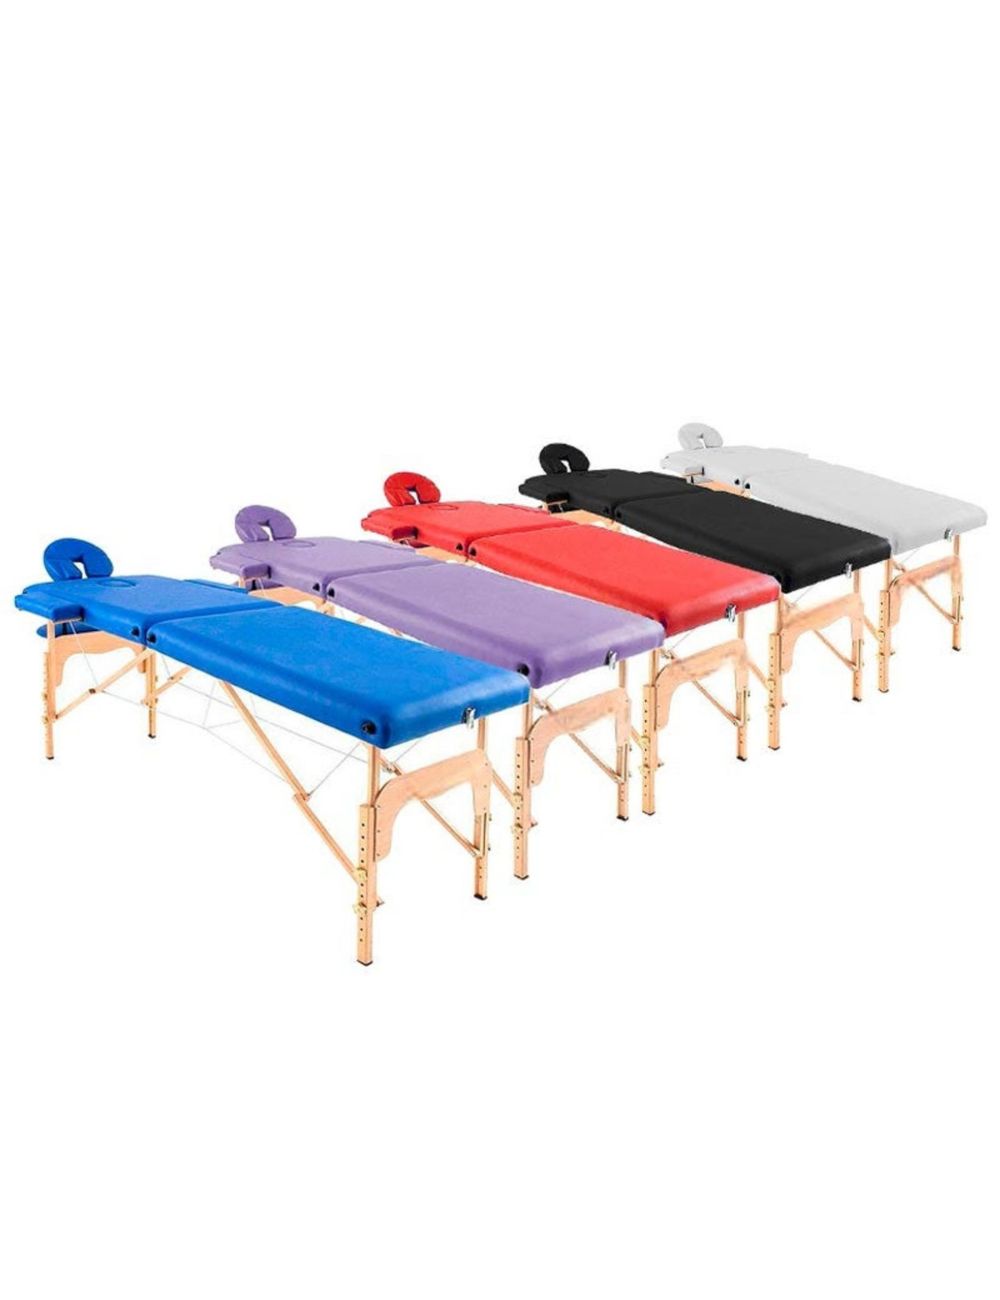 Table de massage pliante en bois 182 x 60 cm sans dossier - 6 coloris